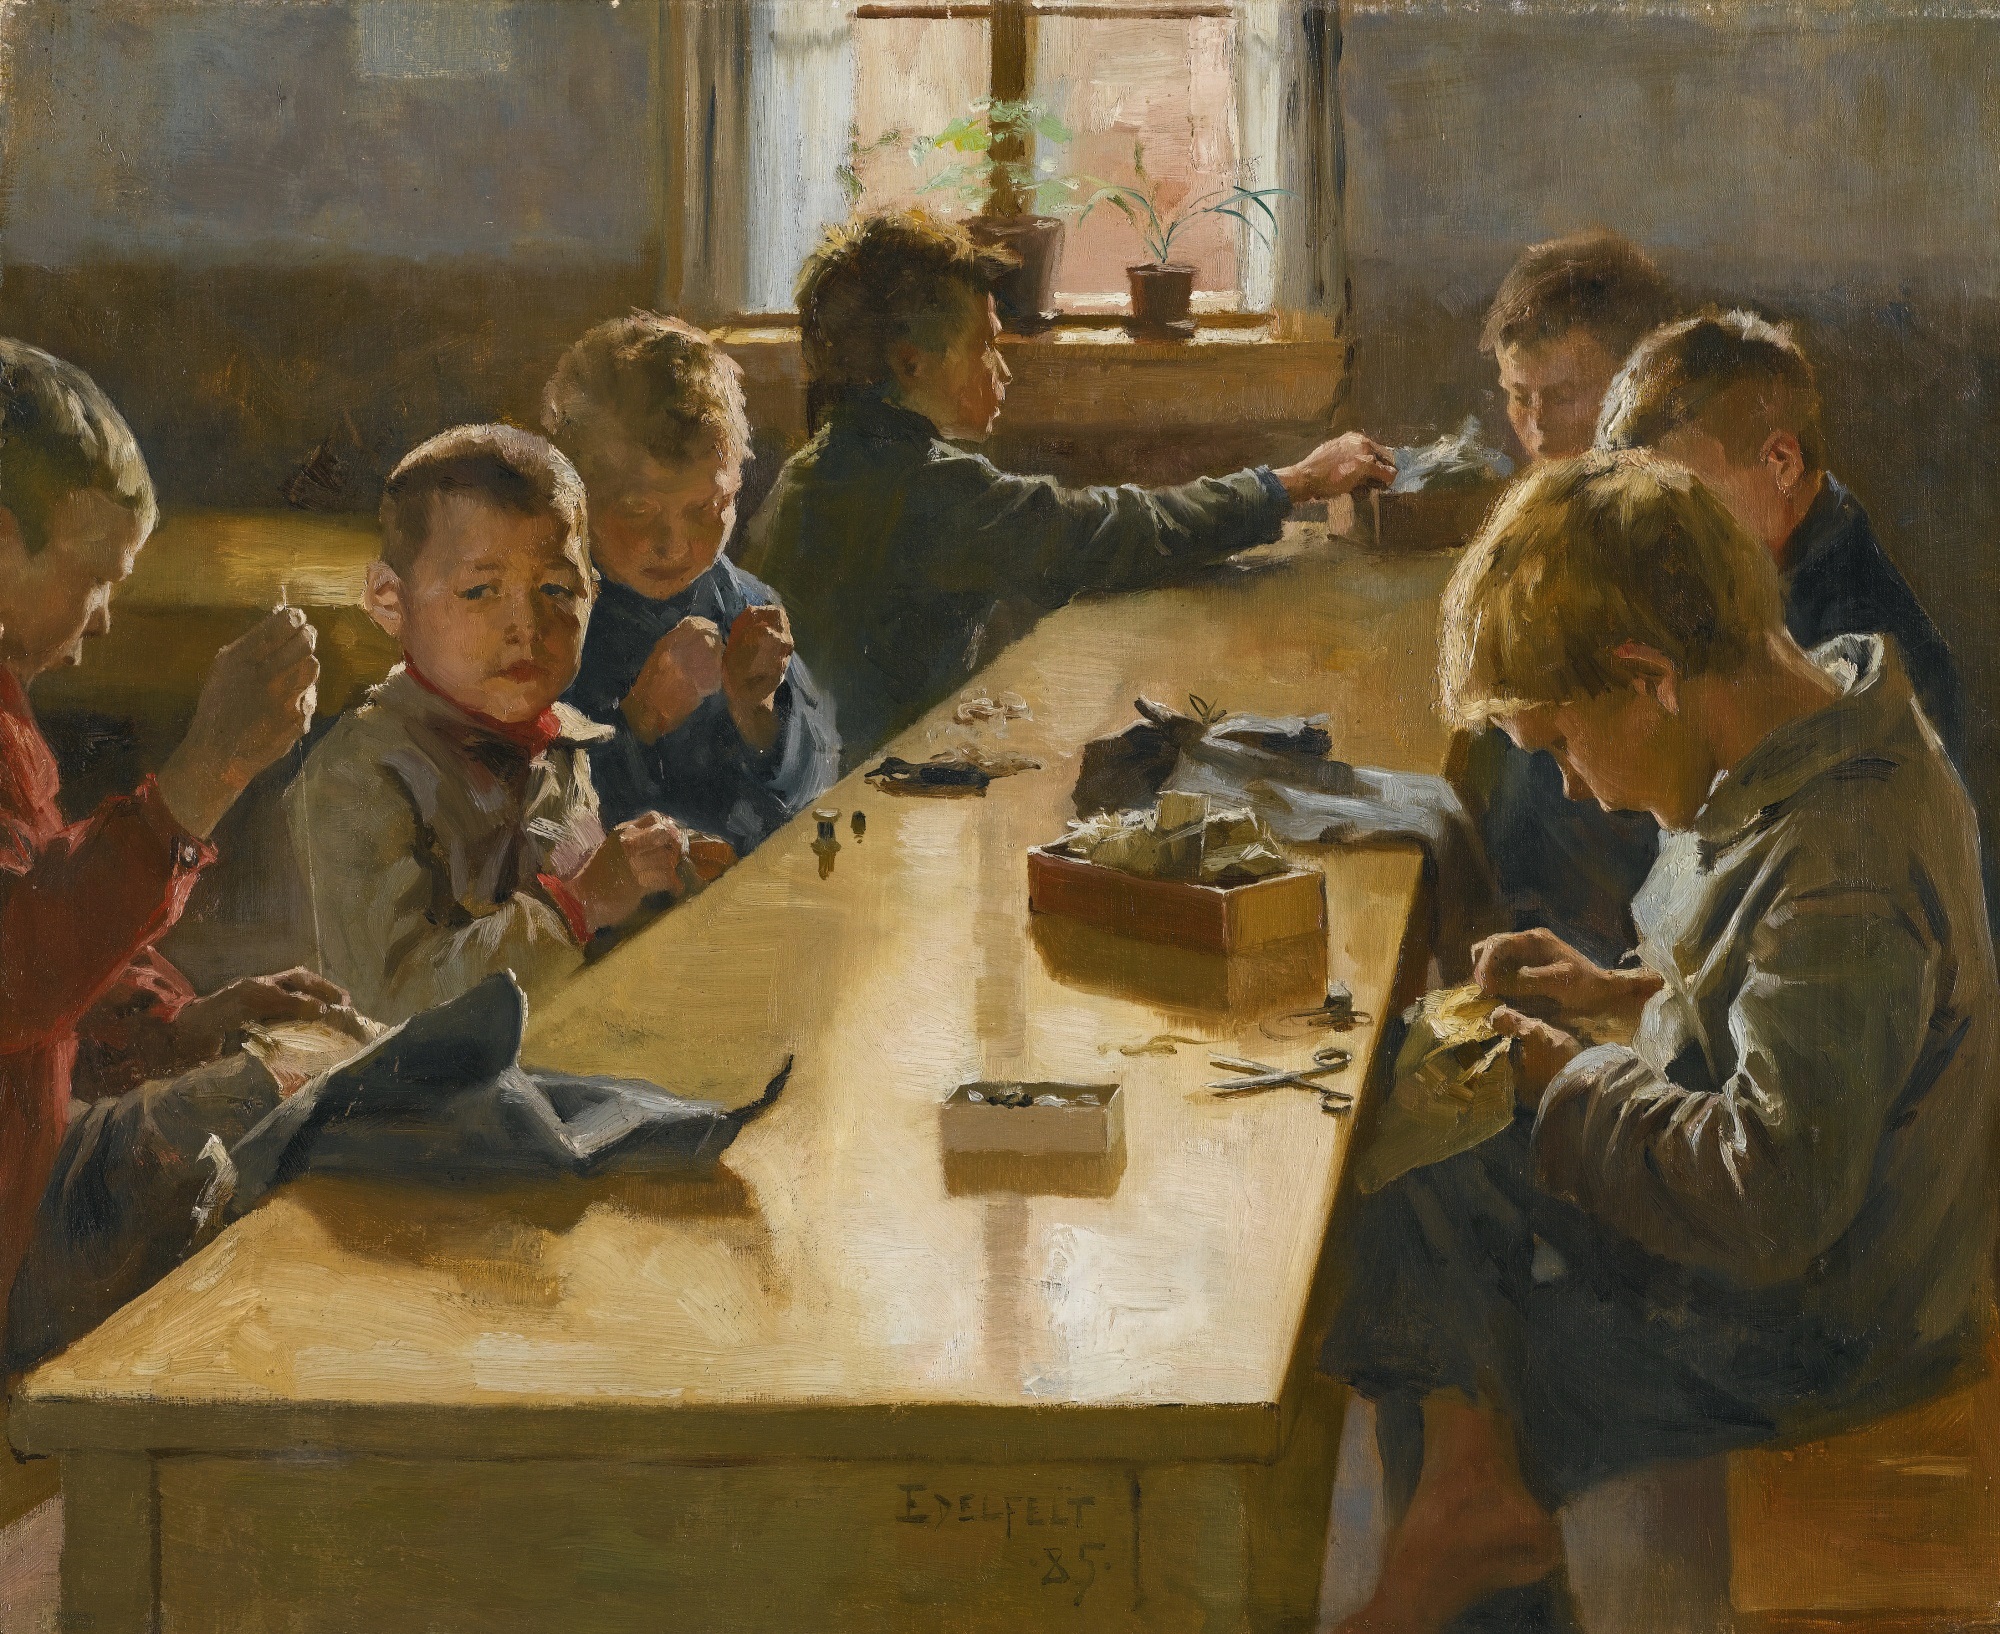 Albert Edelfelt - The Boys’ Workhouse, Helsinki (1885)